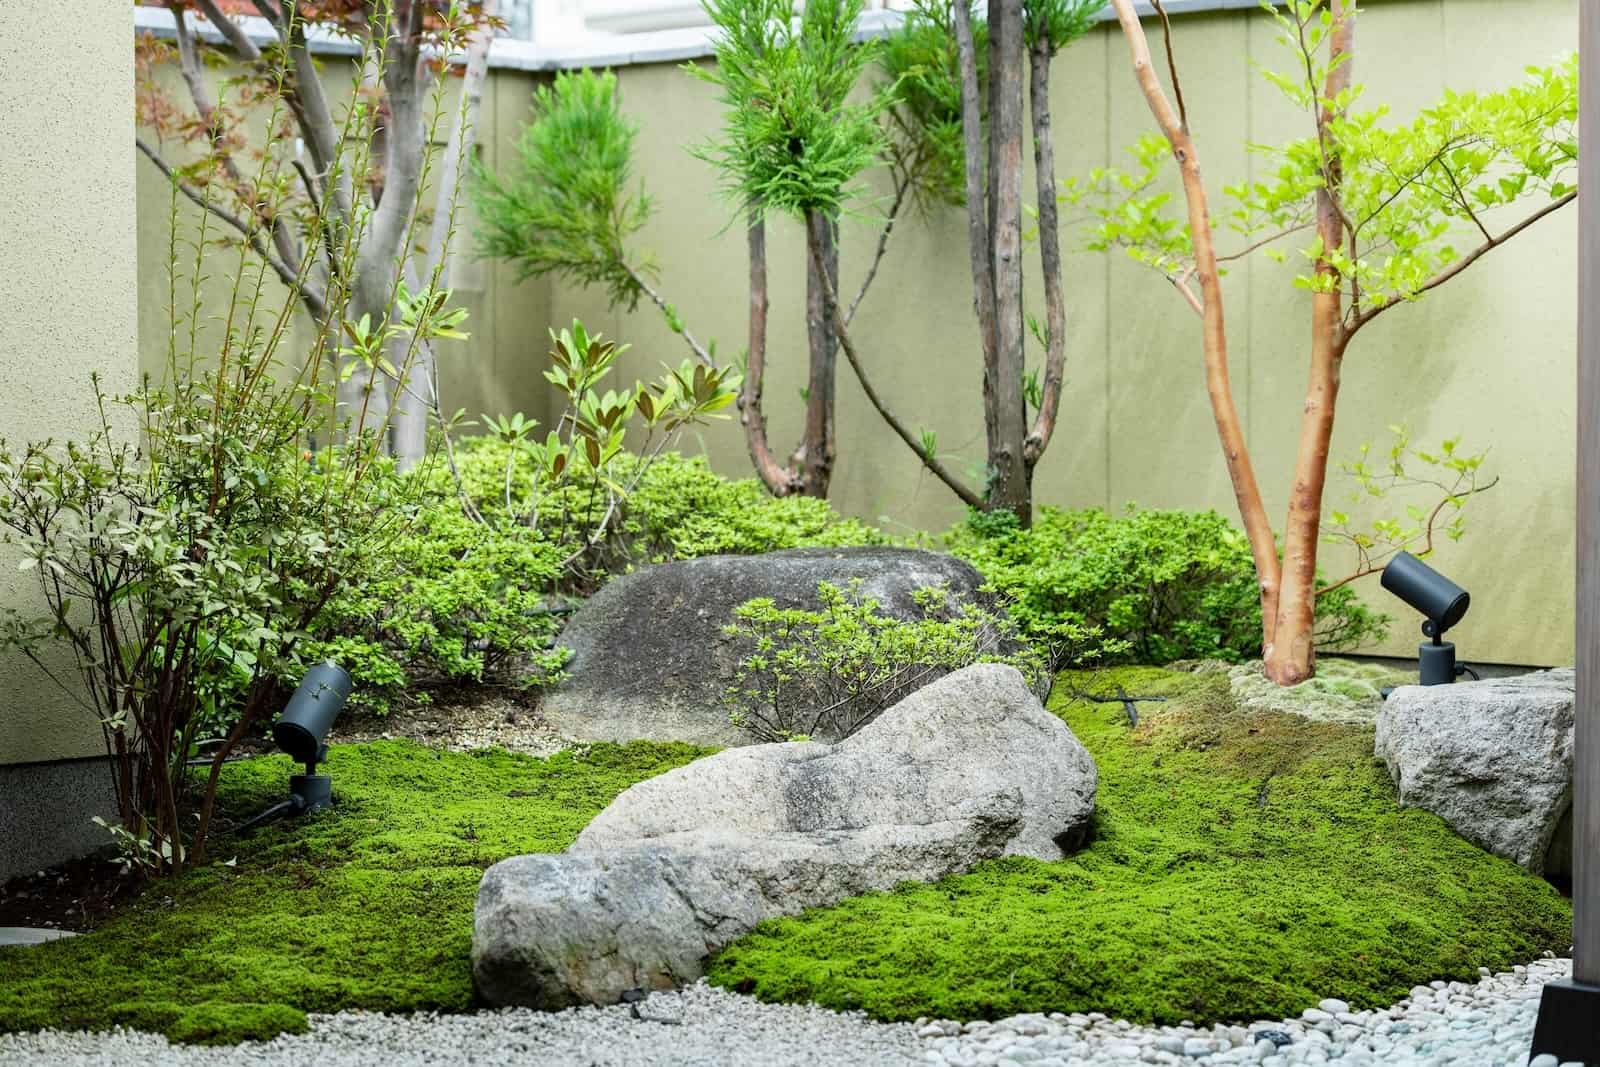 Japanese Style Gardens Image